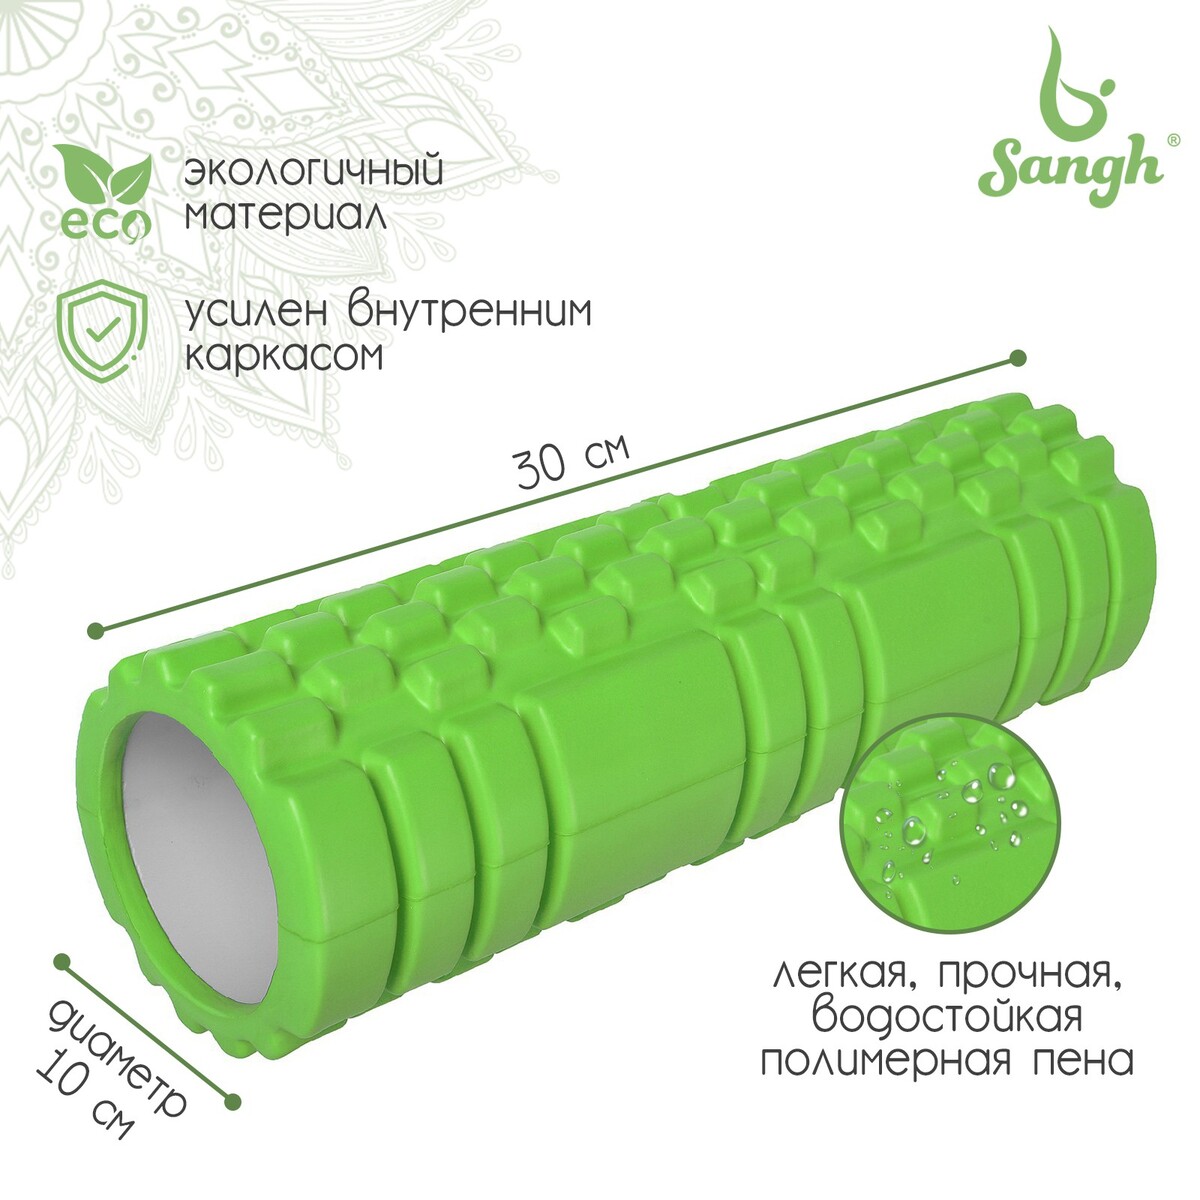 Ролик массажный sangh, 30х10 см, цвет зеленый ролик массажный 33x14 cм star fit pro низкая жесткость fa 508 зеленый камуфляж оранжевый